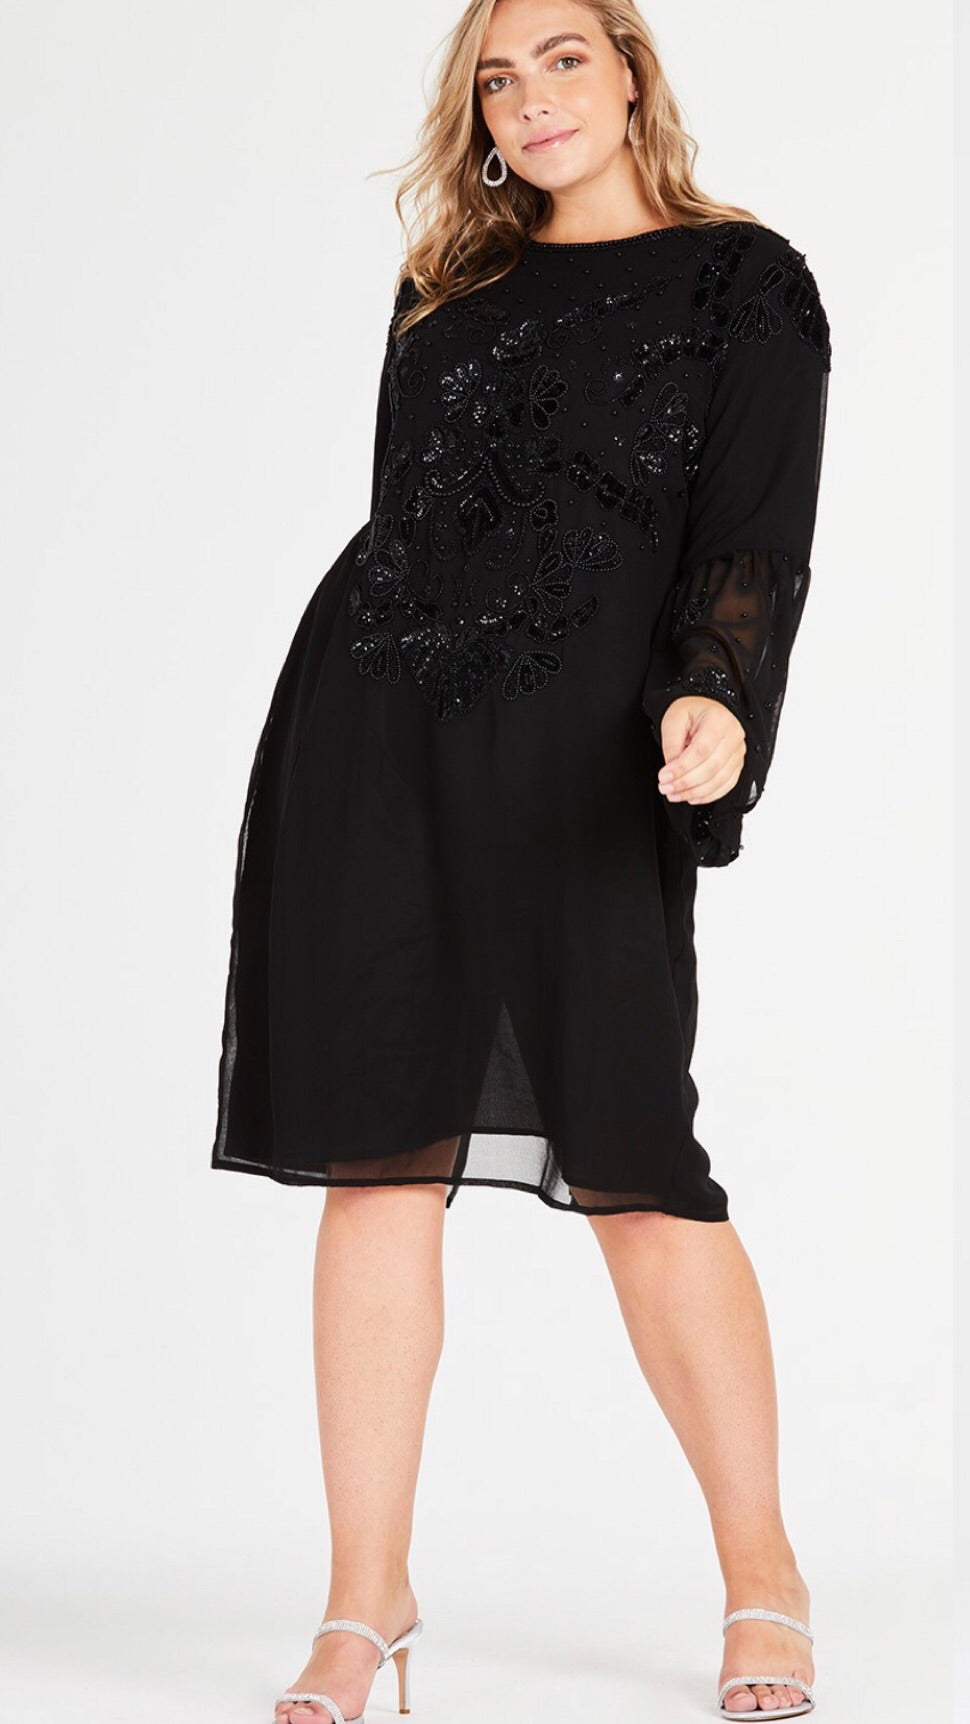 Elvi Black Beaded Dress